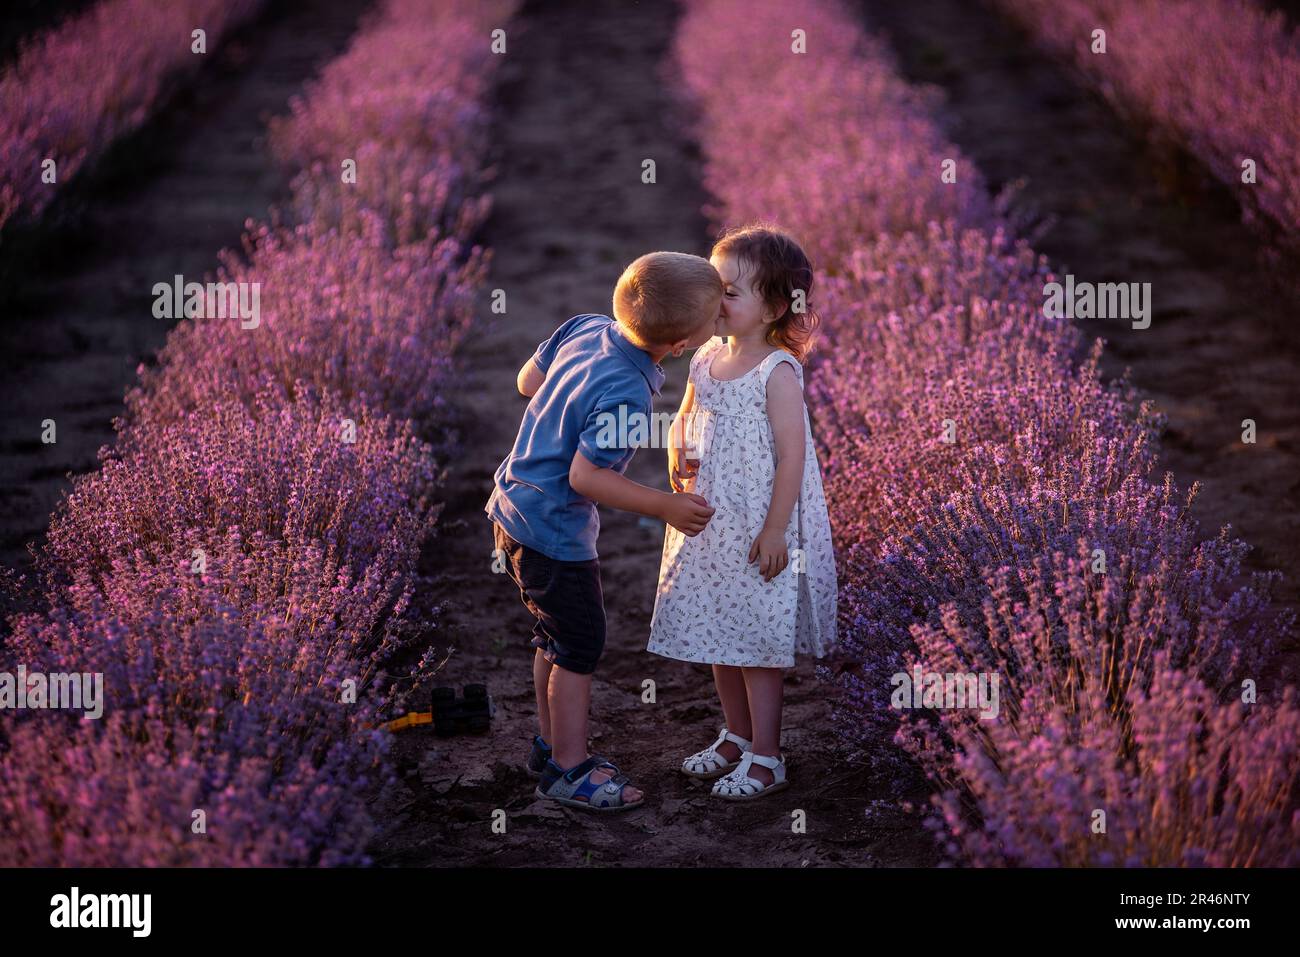 Primo piano ritratto della bambina che bacia il ragazzo sulla guancia nelle file di campo di lavanda viola. Coppia carina amorevole dei bambini hanno divertimento nella natura. FAM Foto Stock